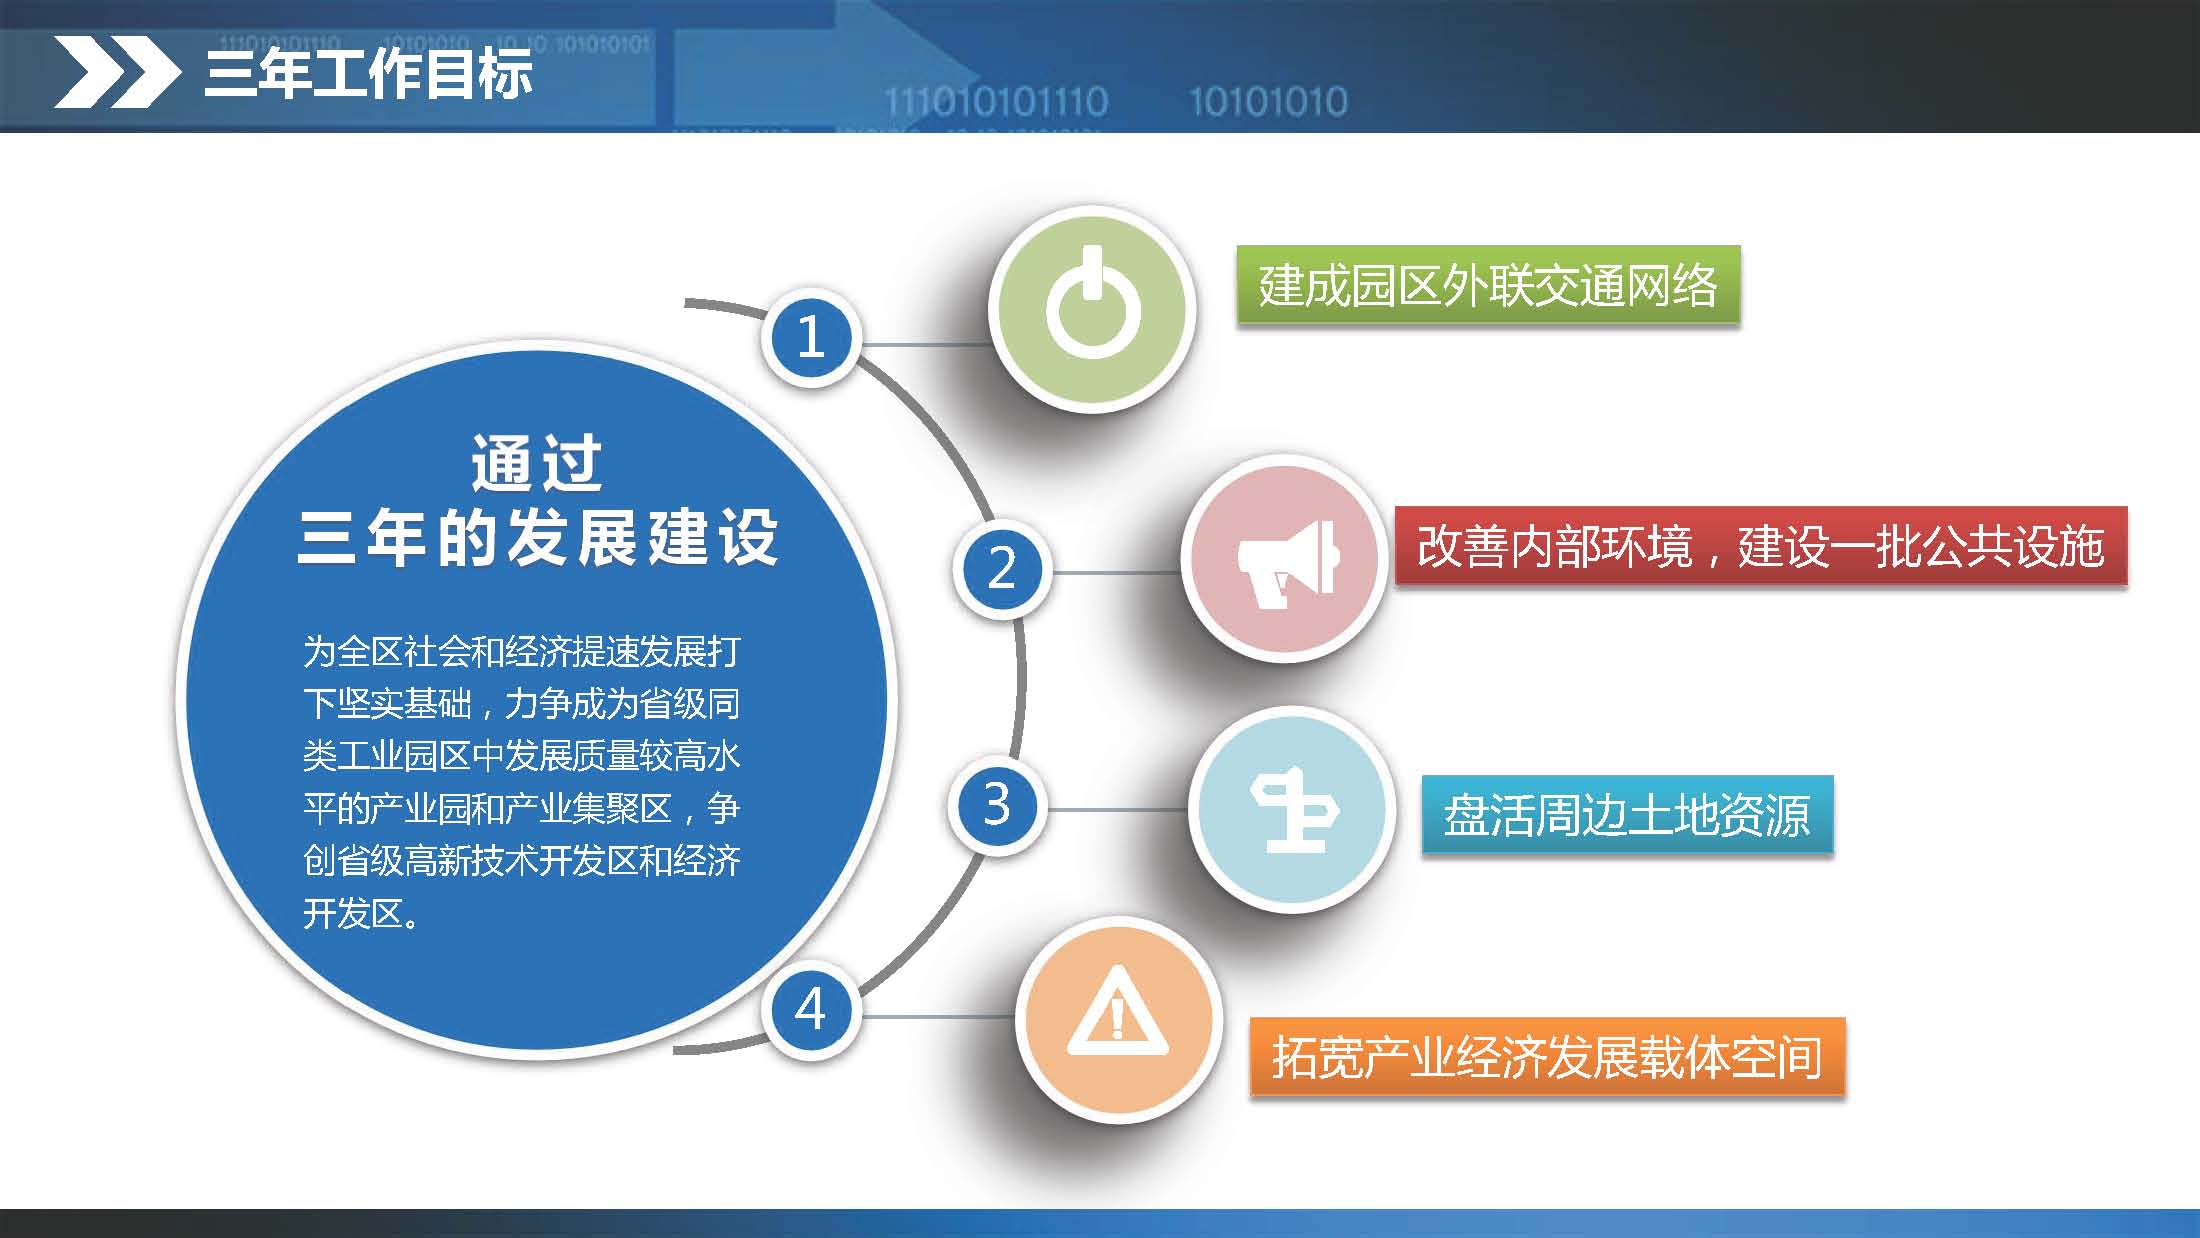 《江门蓬江产业转移工业园建设三年行动计划（2020-2022年）》图文解读_页面_08.jpg